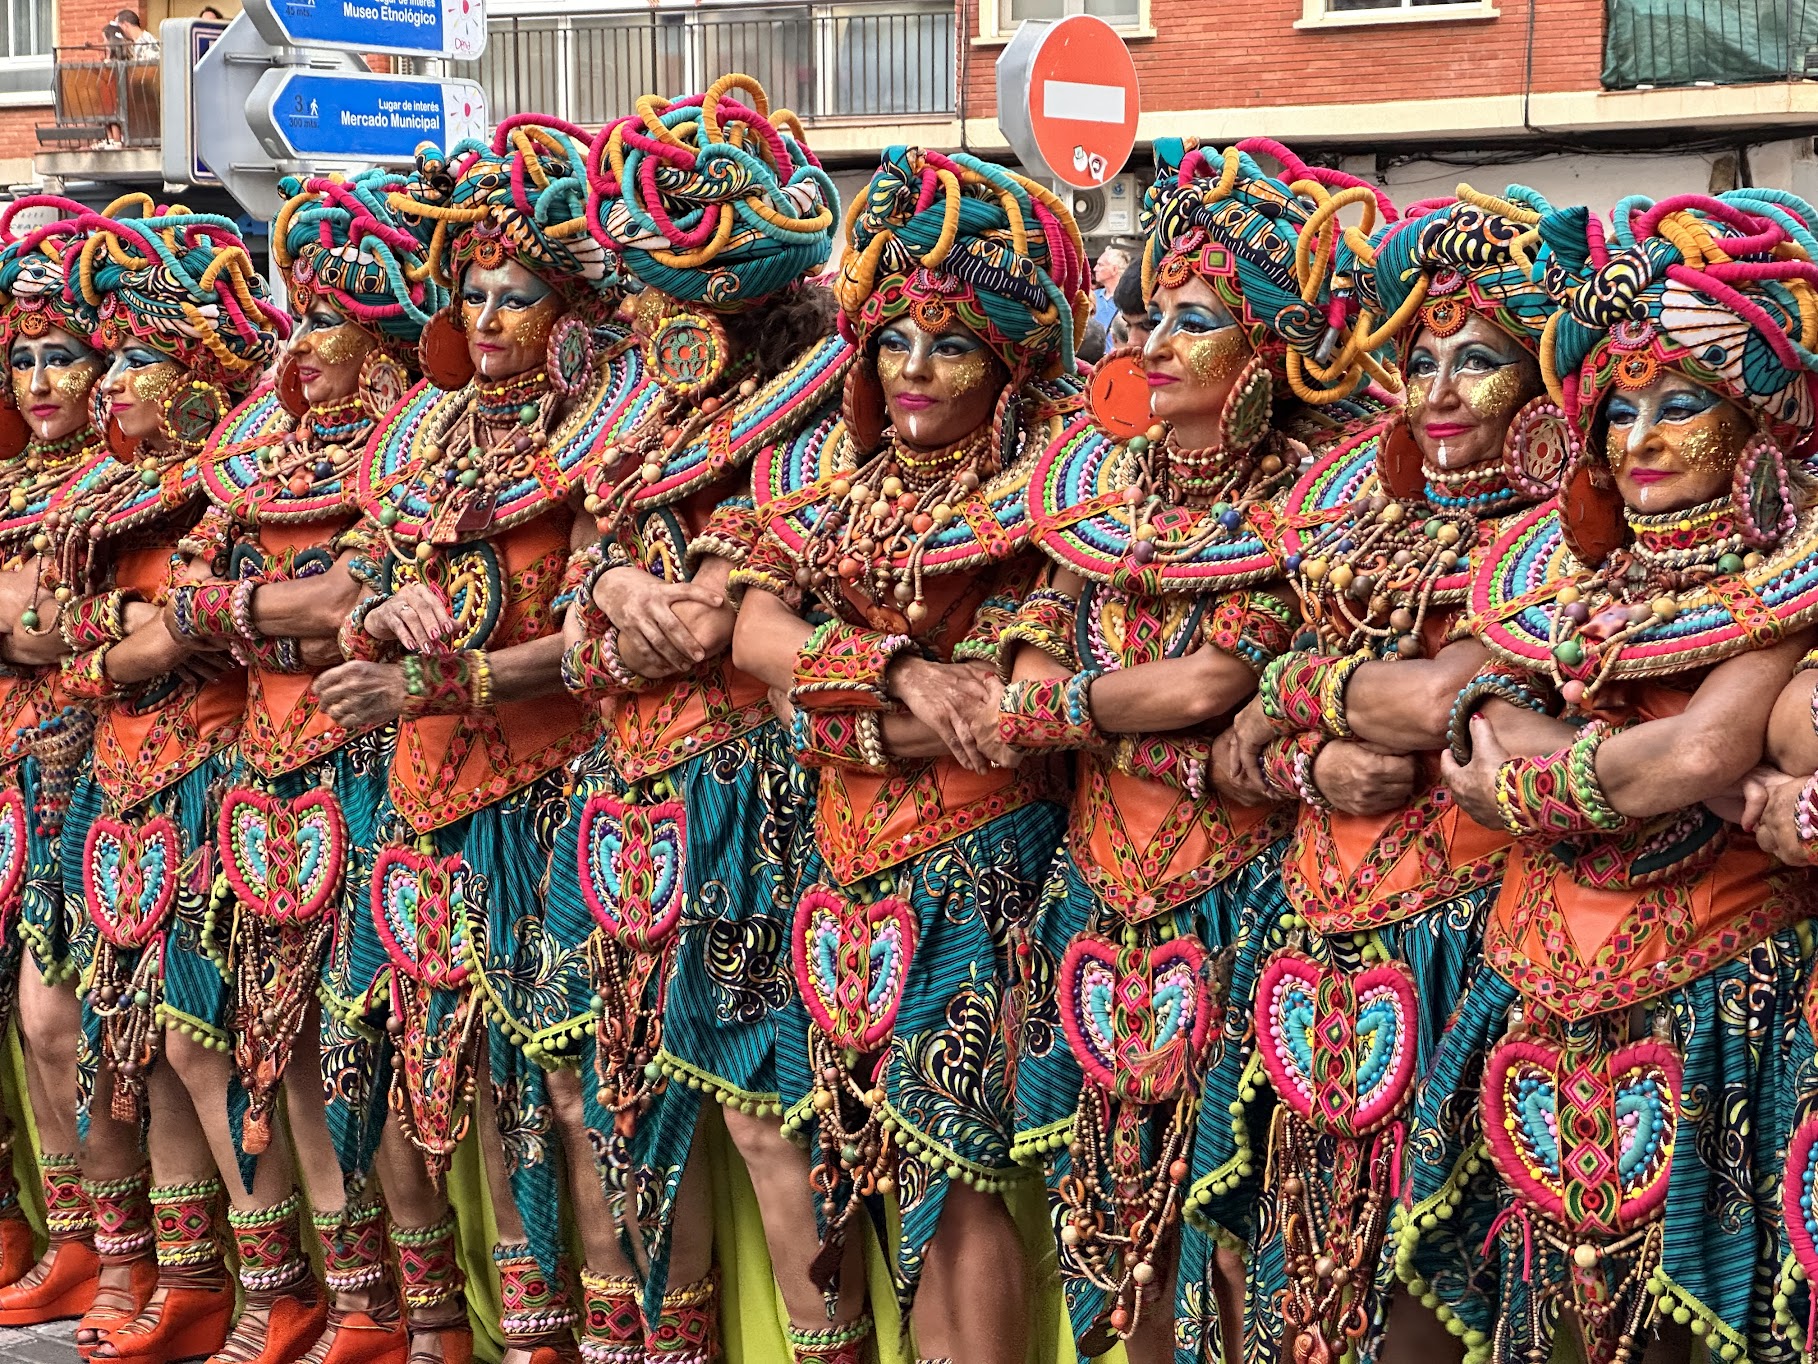 Grupo moros y cristianos denia en desfile con trajes coloridos y tradicionales.